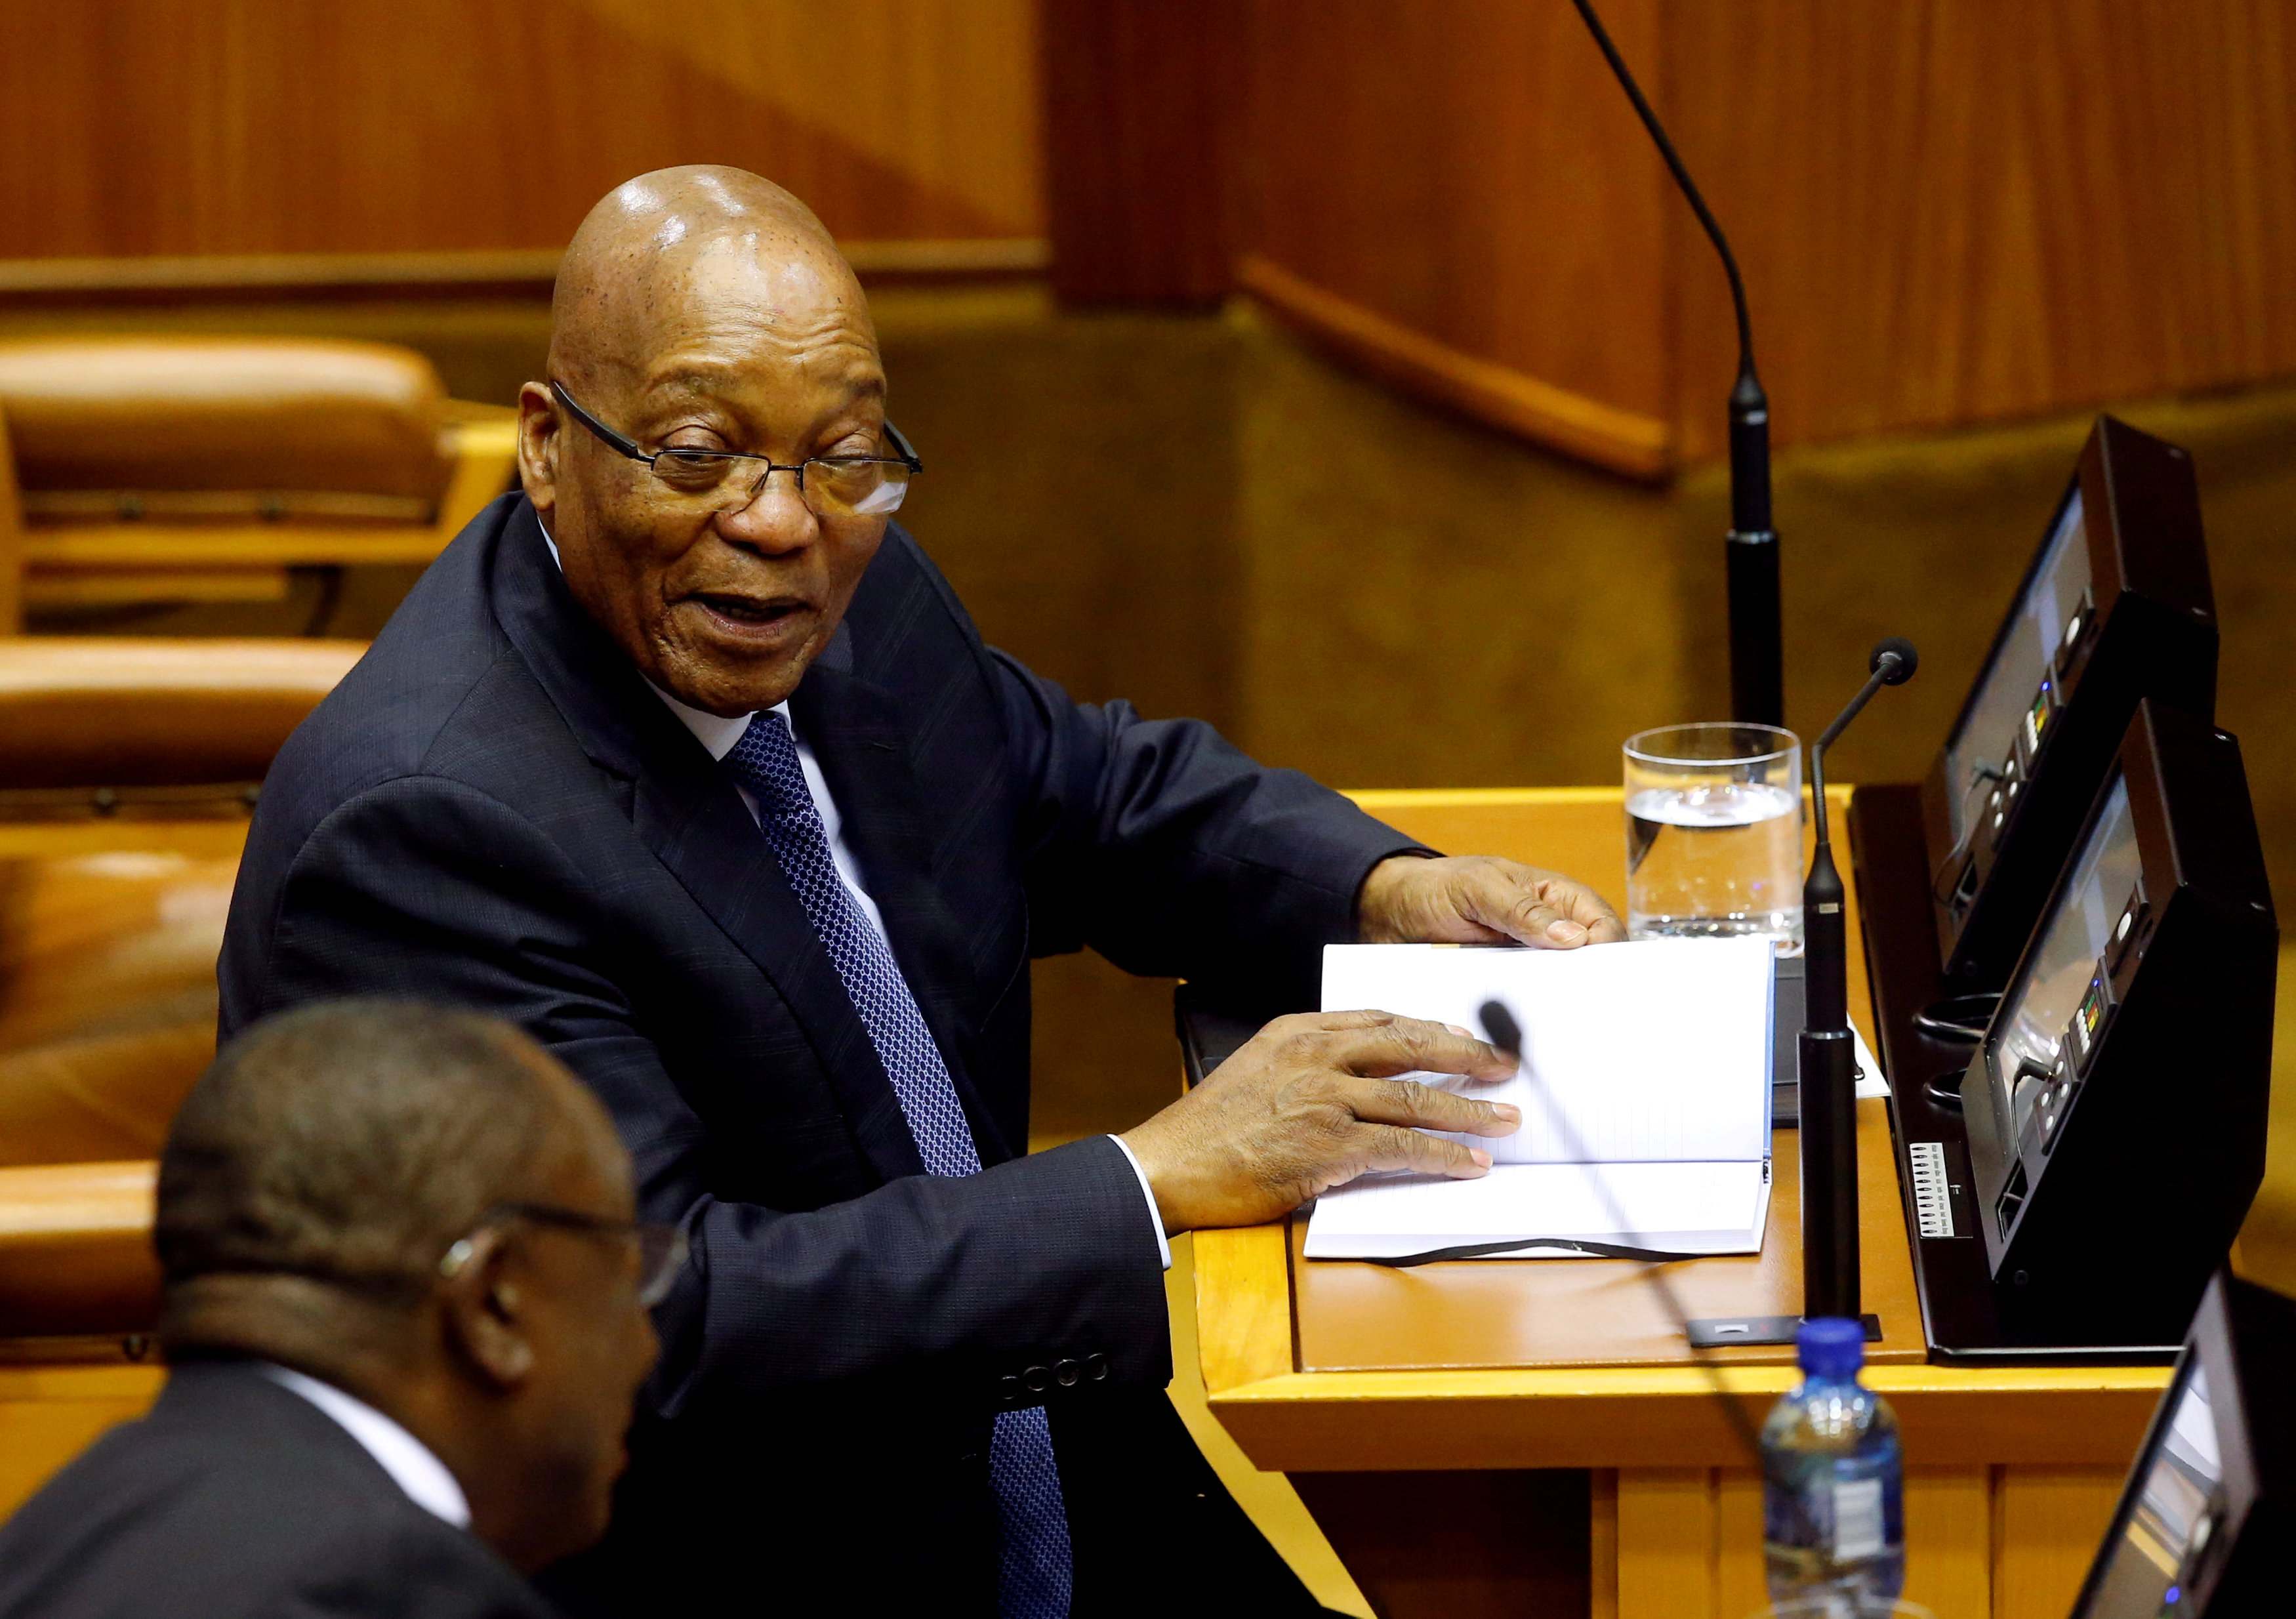 جاكوب زوما رئيس جنوب أفريقيا يتحددث إلى نائبه